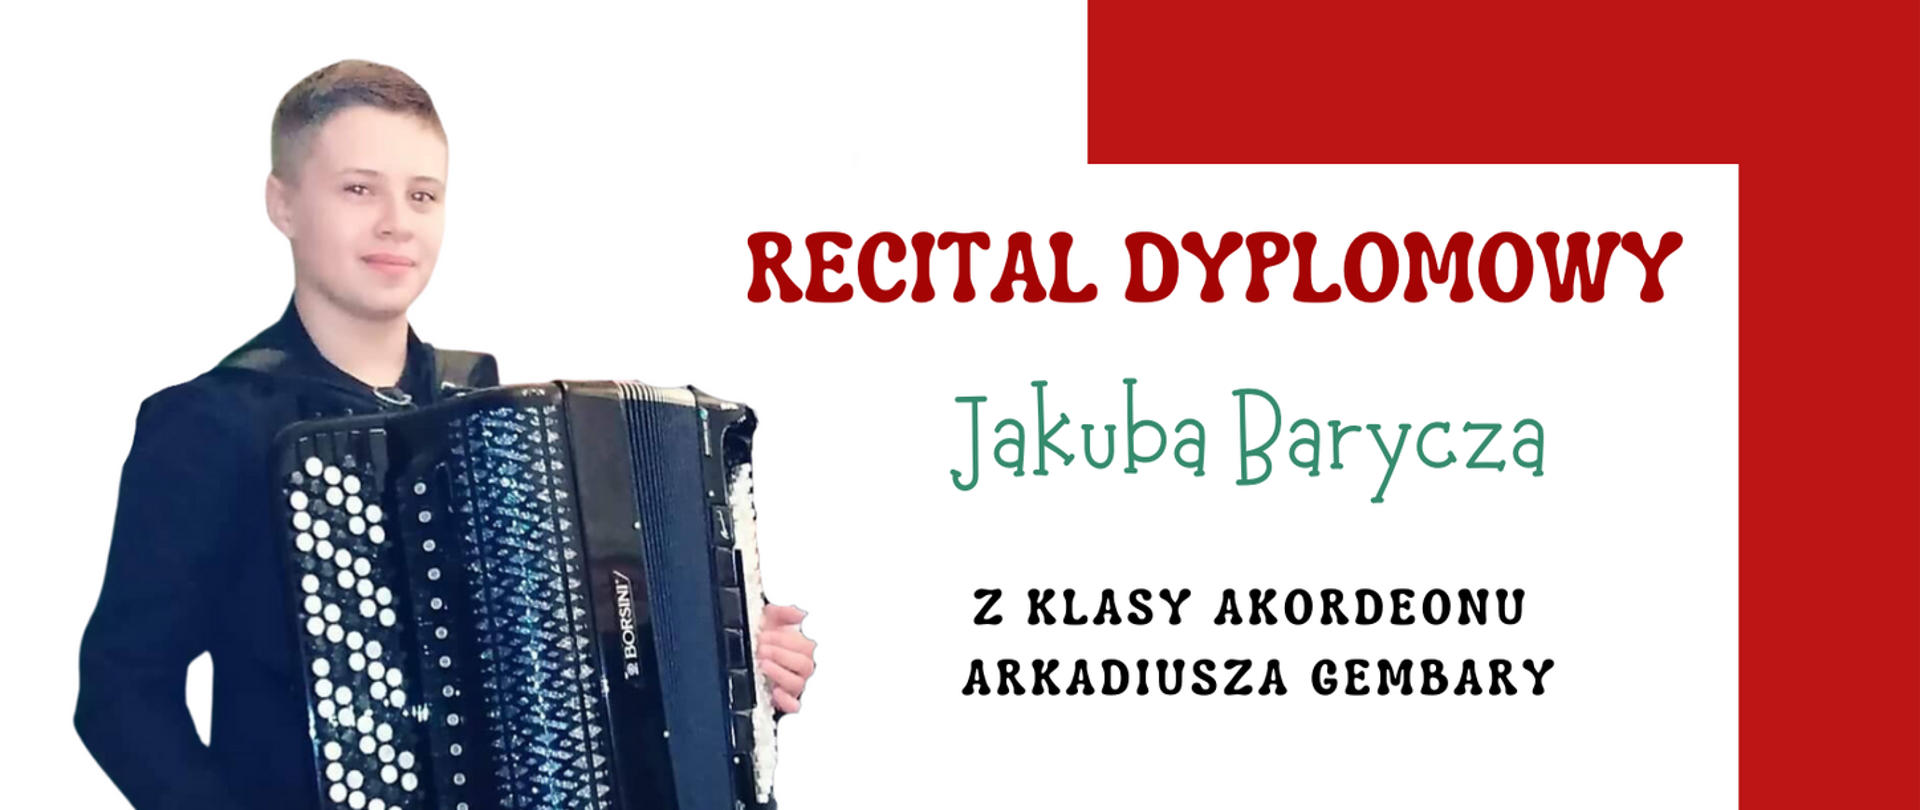 Zdjęcie przedstawia zaproszenie na recital dyplomowy Pana JJakuba Barycza, który odbędzie się 1 czerwca 2023 r. 